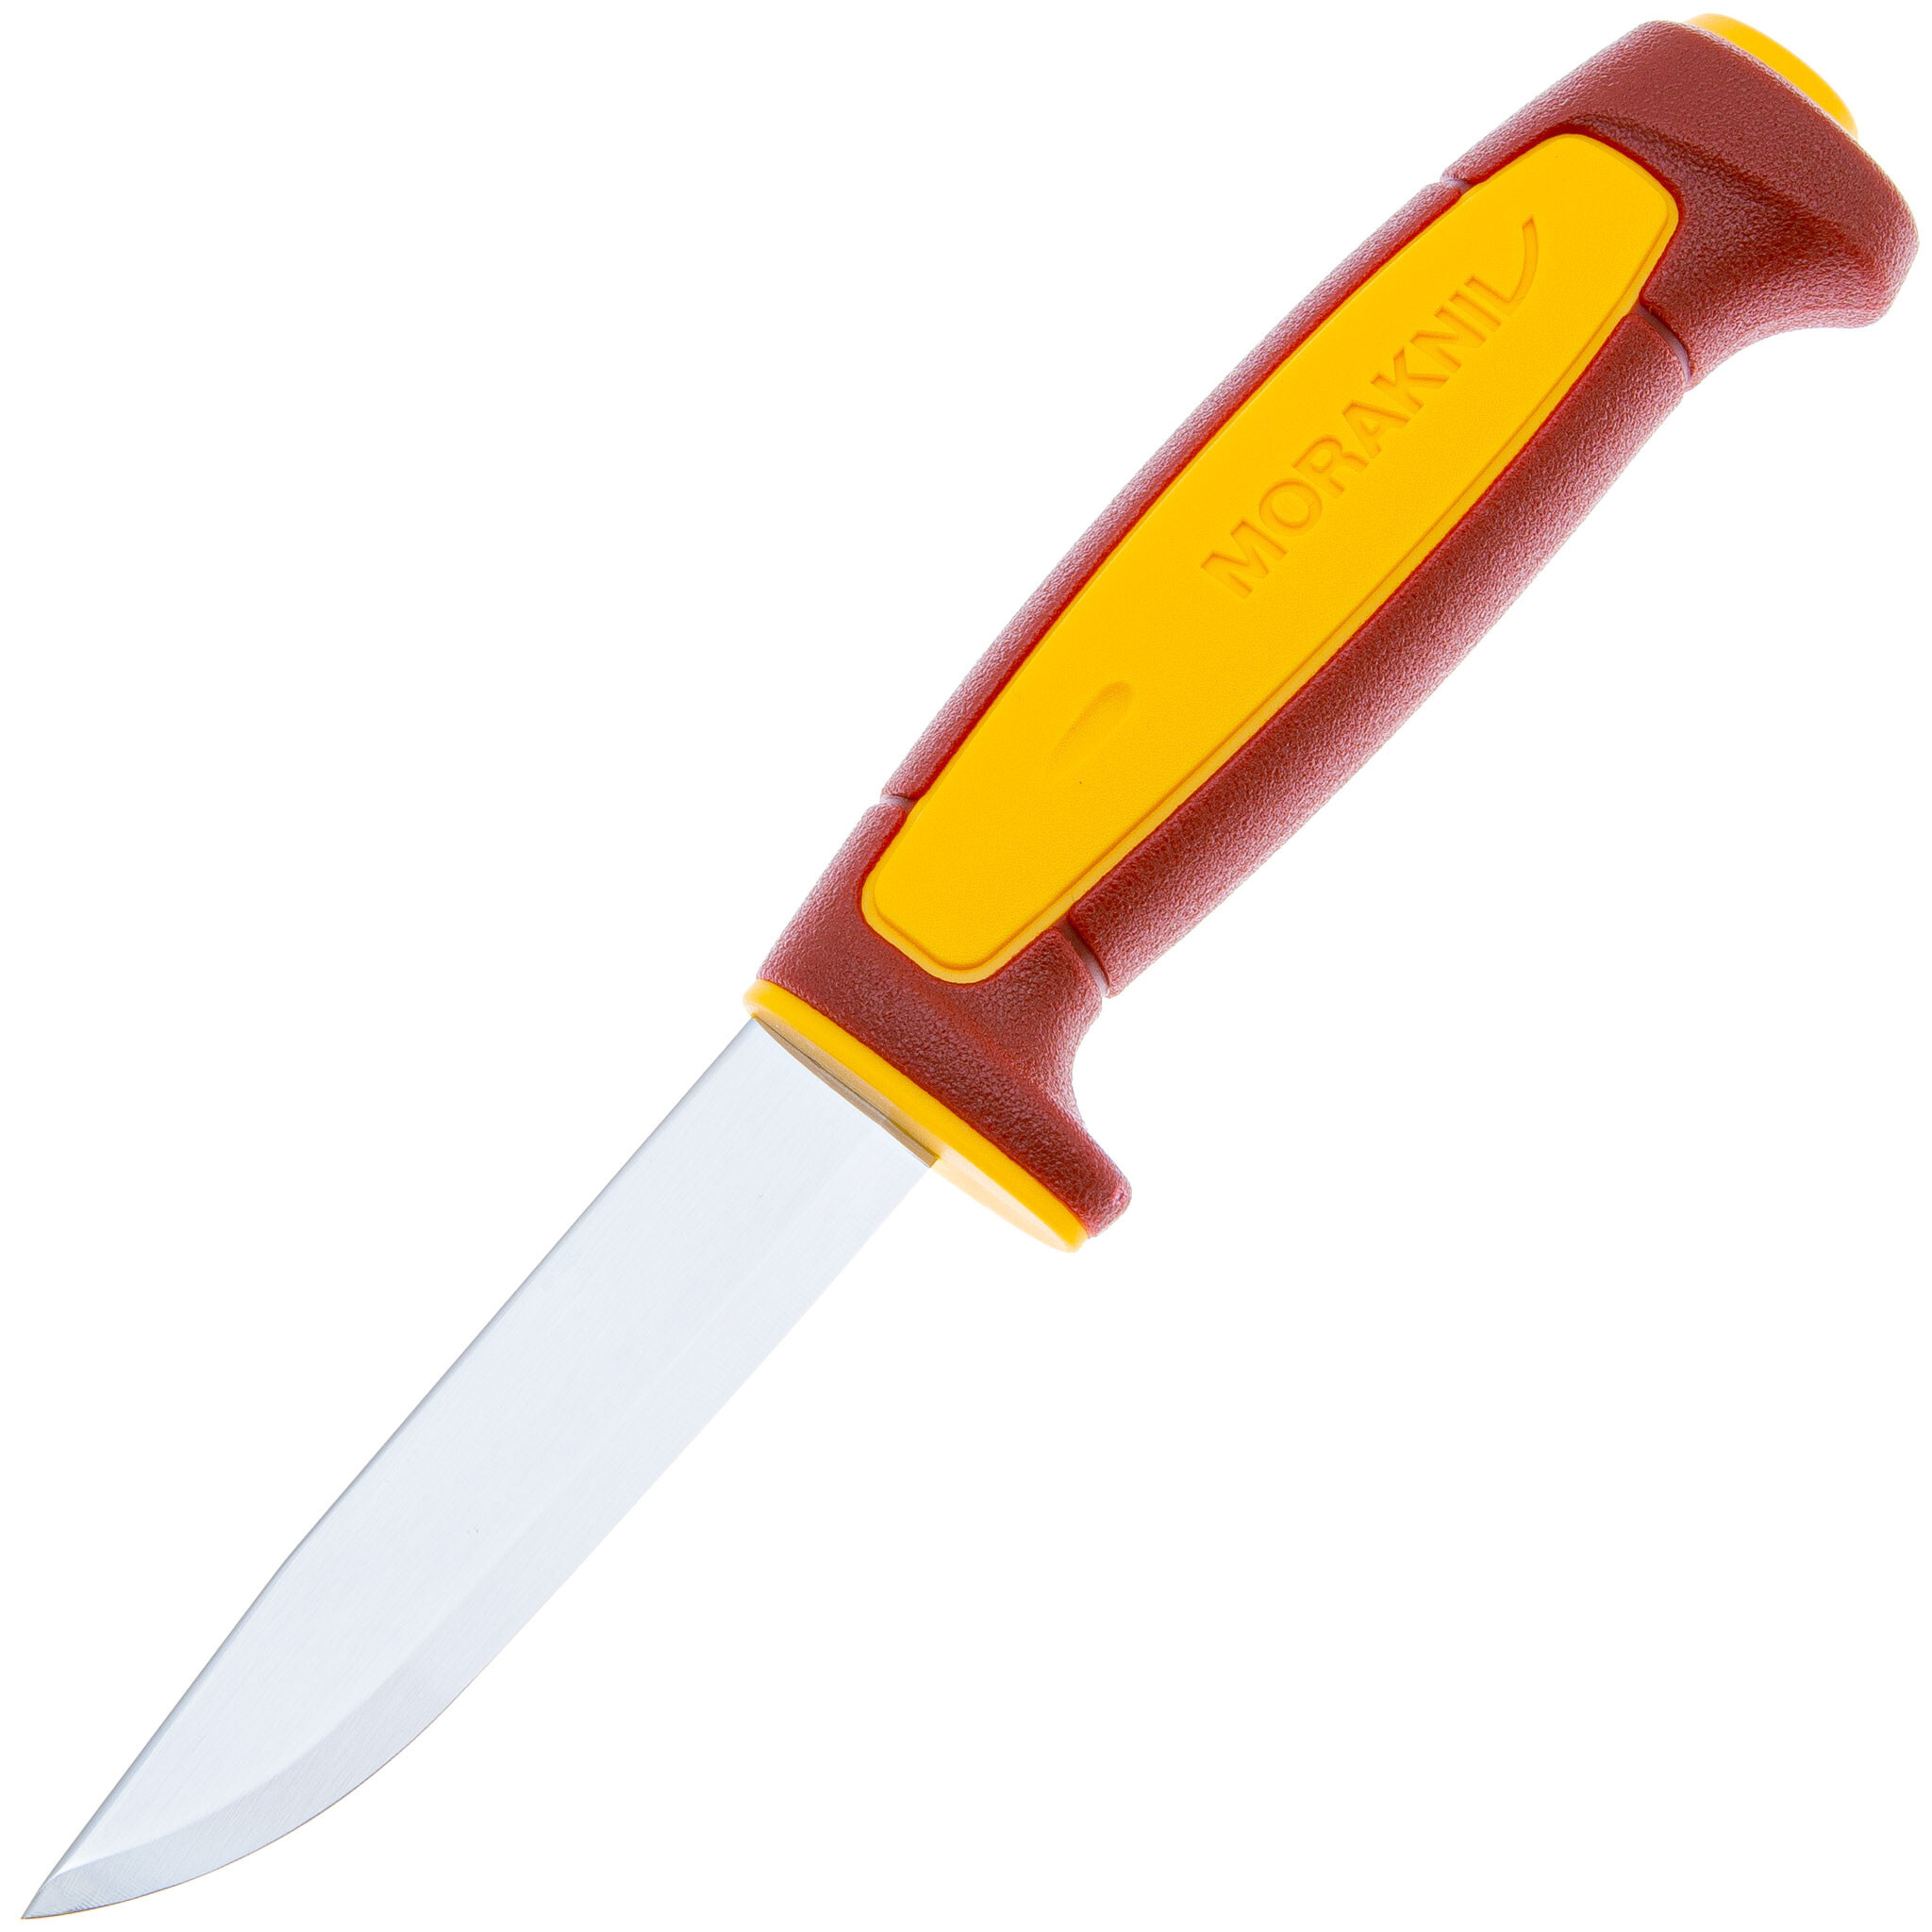 Нож с фиксированным лезвием Morakniv Basic 511, 2023, углеродистая сталь, рукоять пластик, red/yellow